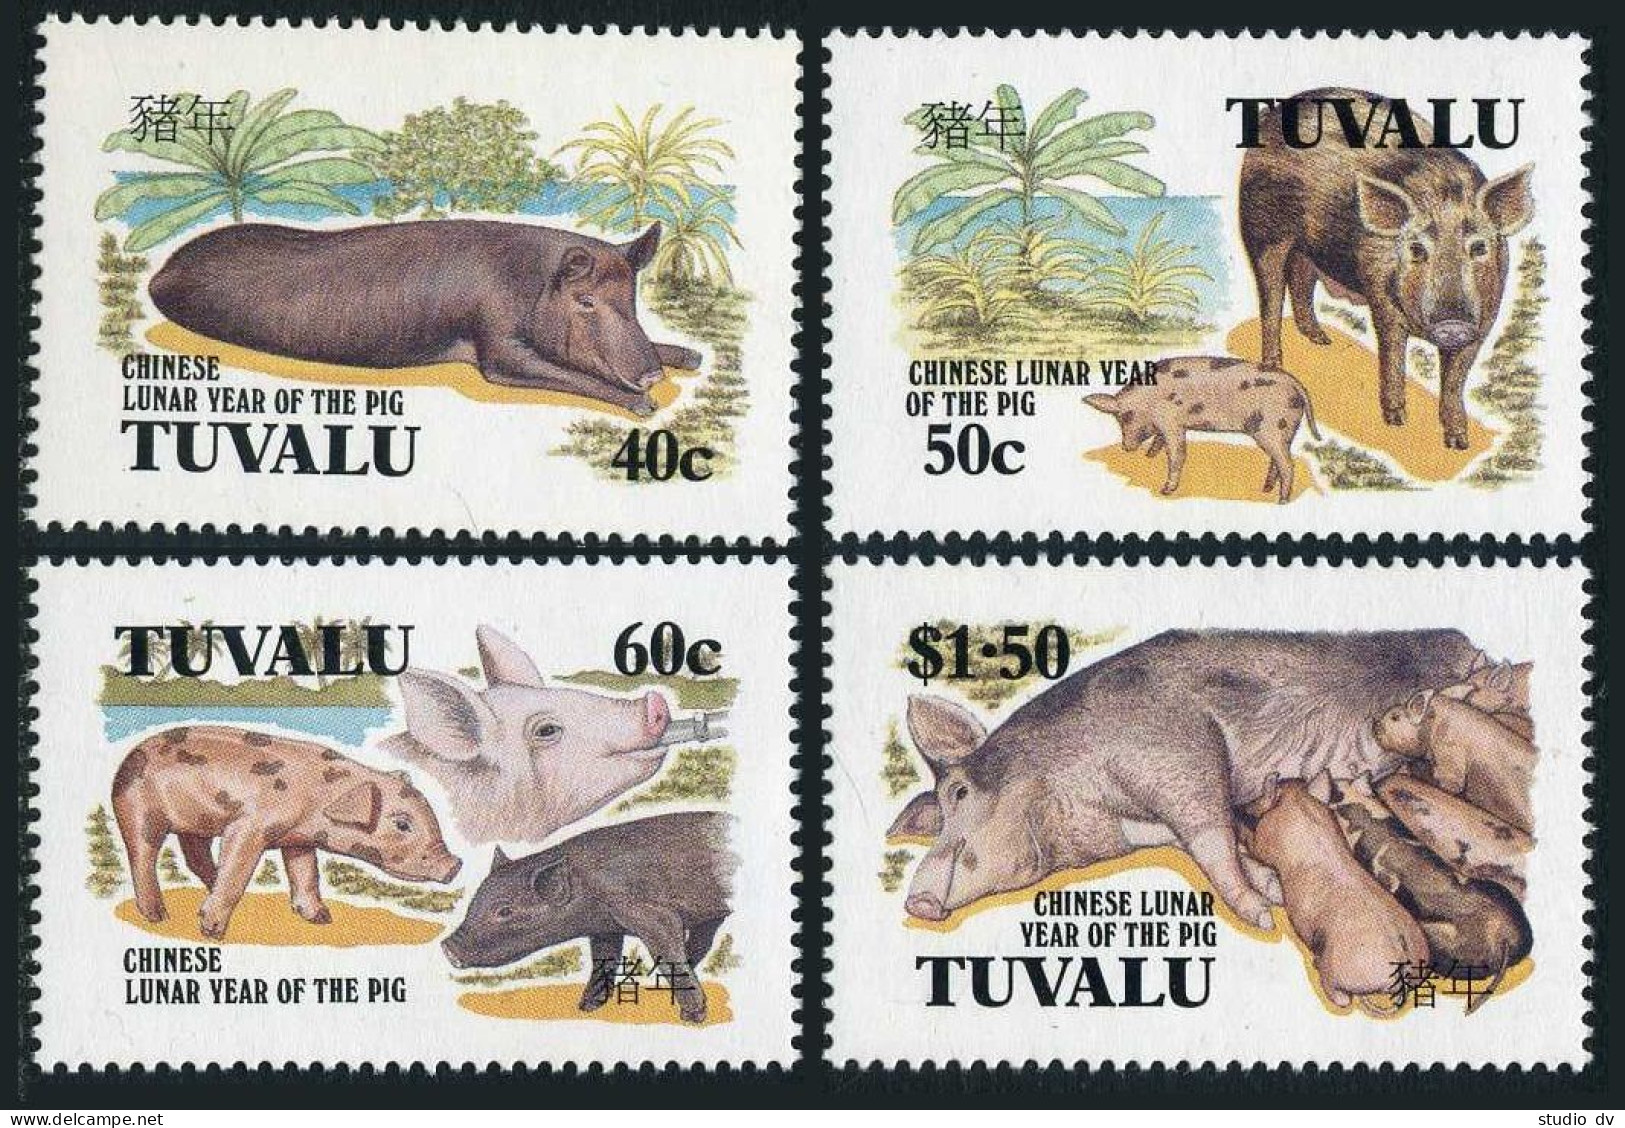 Tuvalu 685-688, MNH. Michel 709-712. New Year 1995, Lunar Year Of The Boar. - Tuvalu (fr. Elliceinseln)